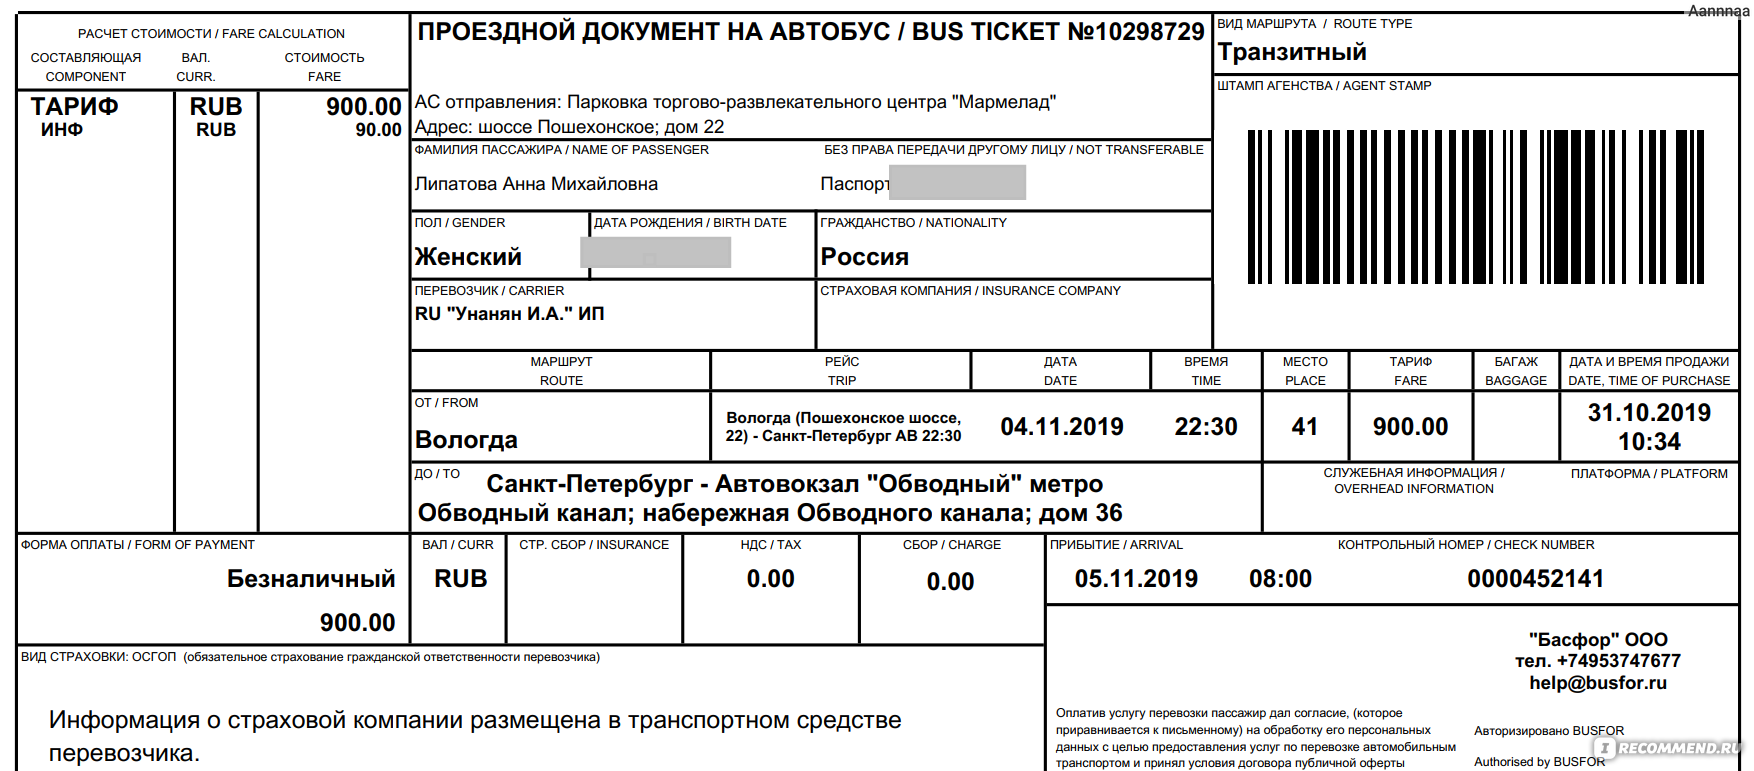 Босфор купить билет на автобус. Электронный билет на автобус. Busfor.ru. Busfor.ru автобусы. Busfor автобусные билеты.